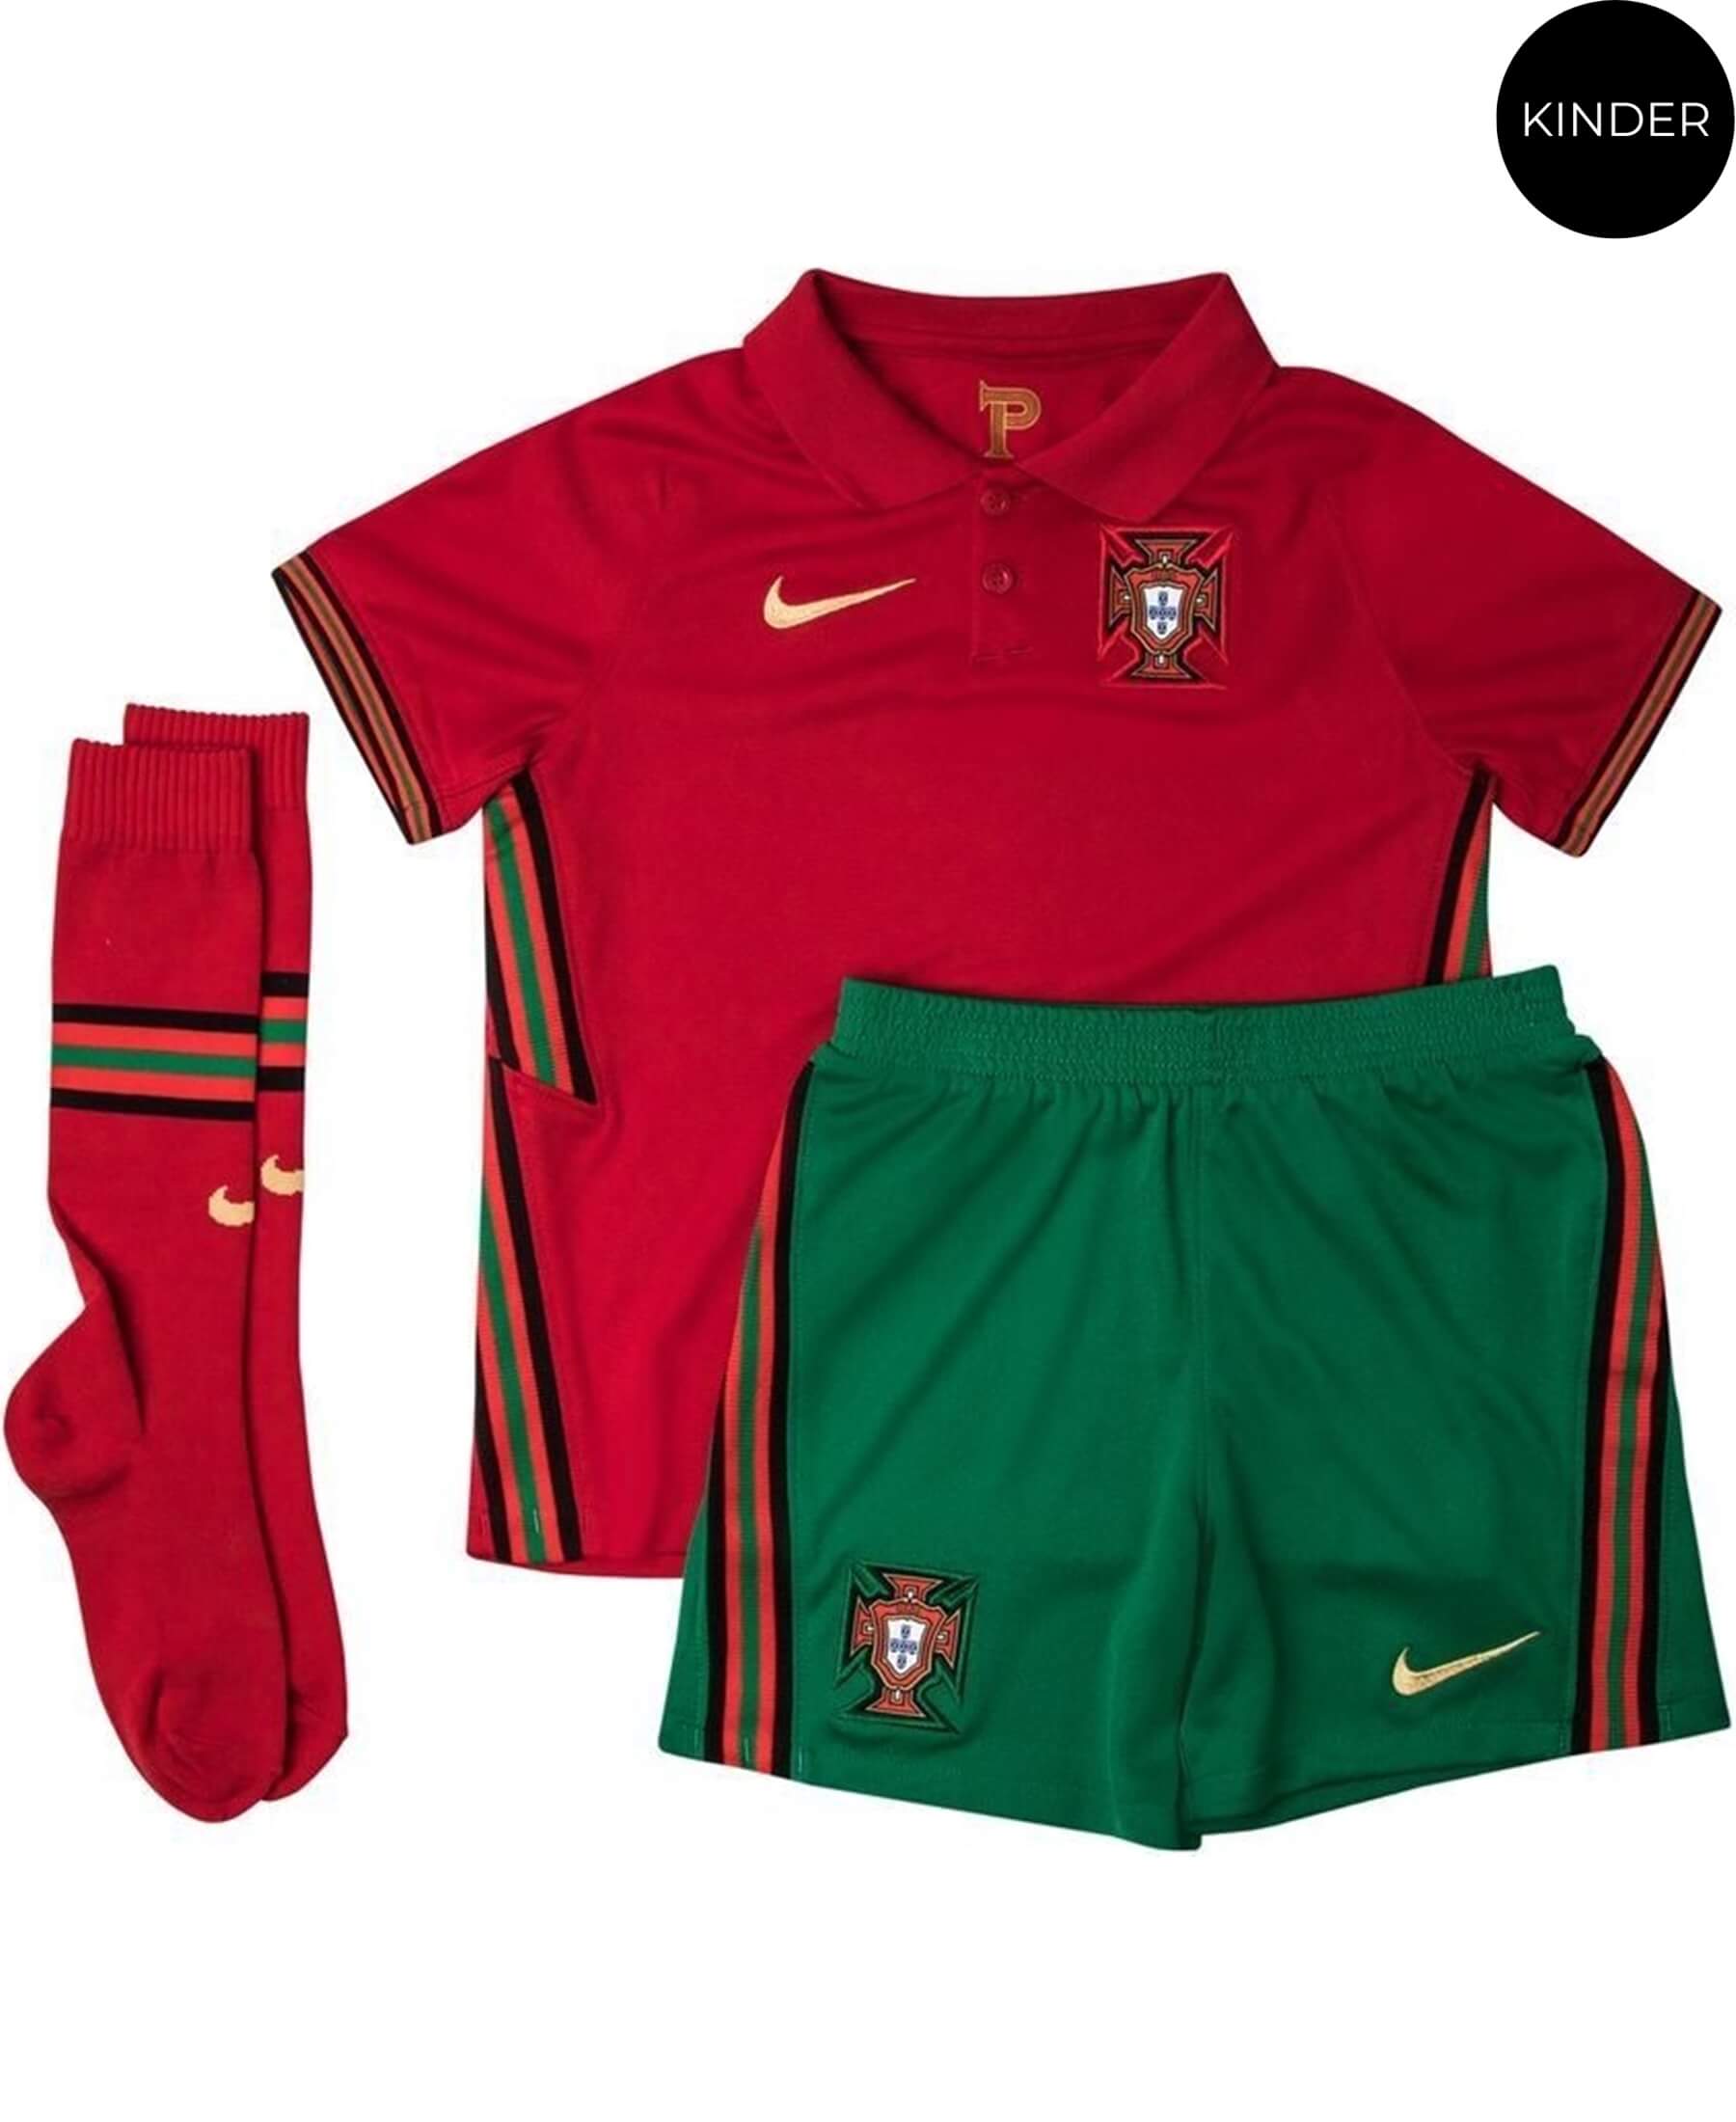 Nike Portugal FPF Stadium Heim Kinder Trikotset für die EM 2021 (CD1273-687) ist die perfekte Wahl für junge Fans. Dieses offizielle Trikotset ermöglicht es den jungen Unterstützern, ihre Begeisterung für die portugiesische Nationalmannschaft zu zeigen. Hochwertige Materialien bieten Tragekomfort und Langlebigkeit. Egal ob im Stadion oder in der Freizeit, dieses Trikotset vereint Stil und Teamspirit. Bestellen Sie jetzt bei SHOP4TEAMSPORT